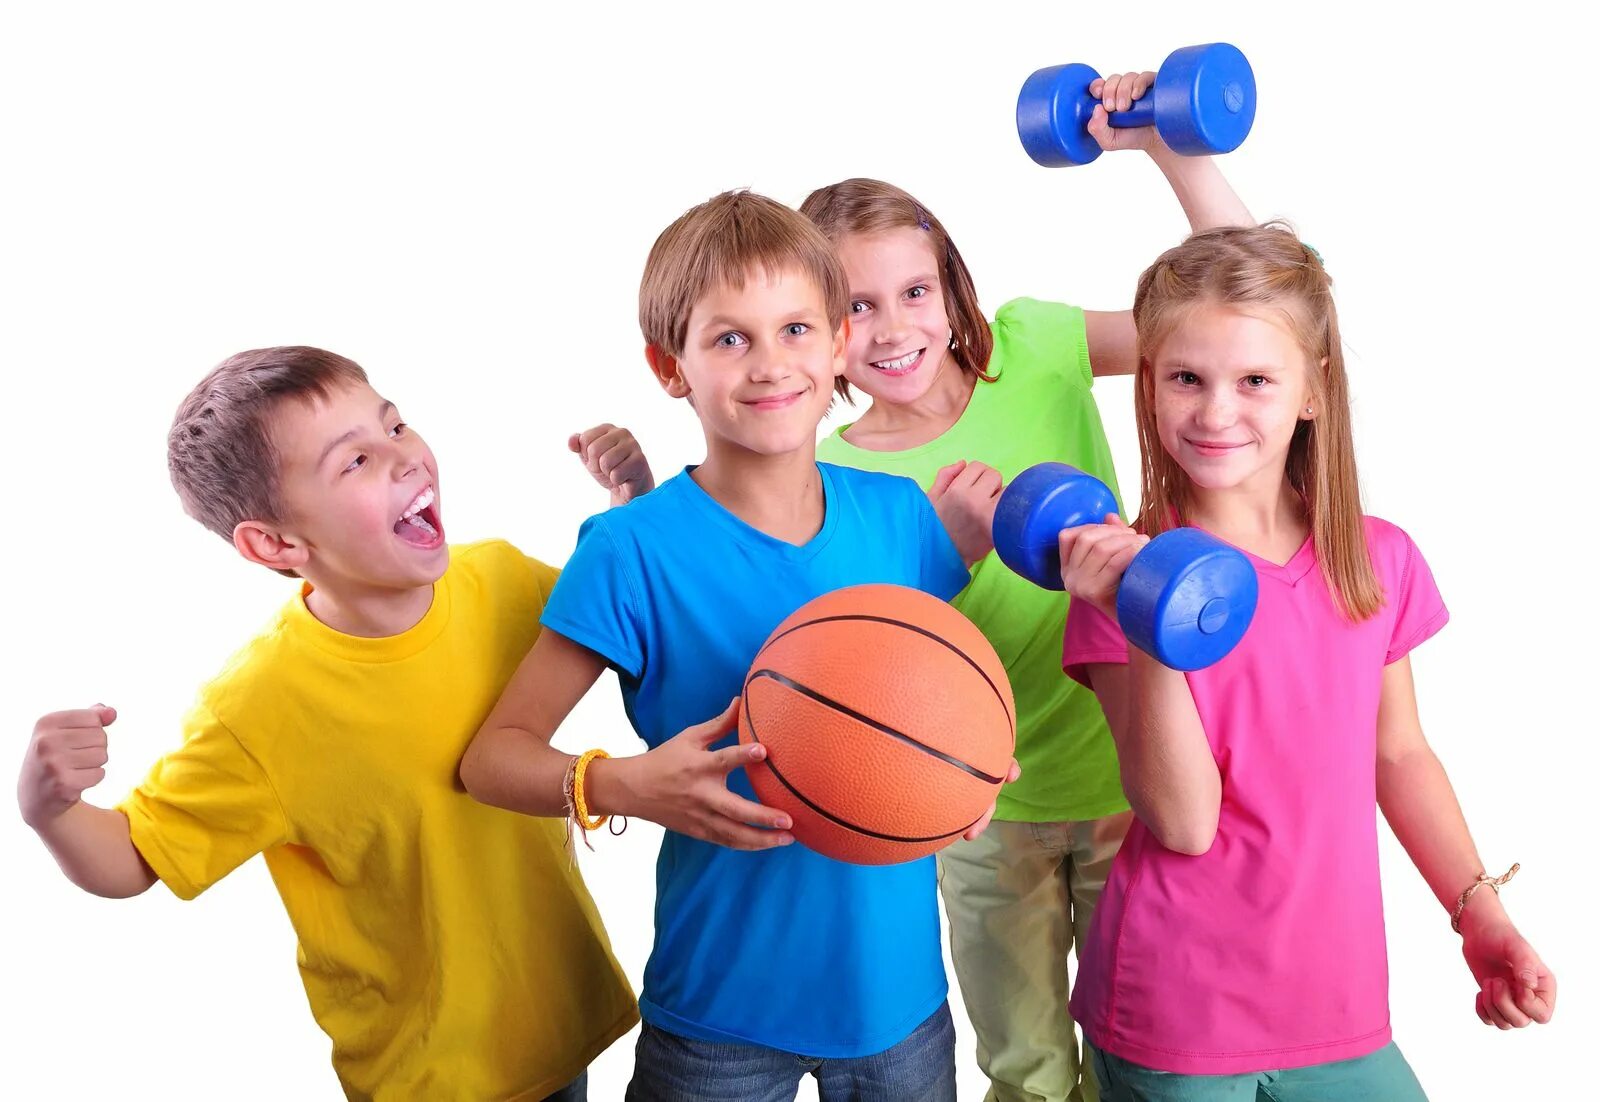 Do you enjoy playing sports. Спорт дети. Физическая культура. Спортивные кружки. Занятие физкультурой и спортом.